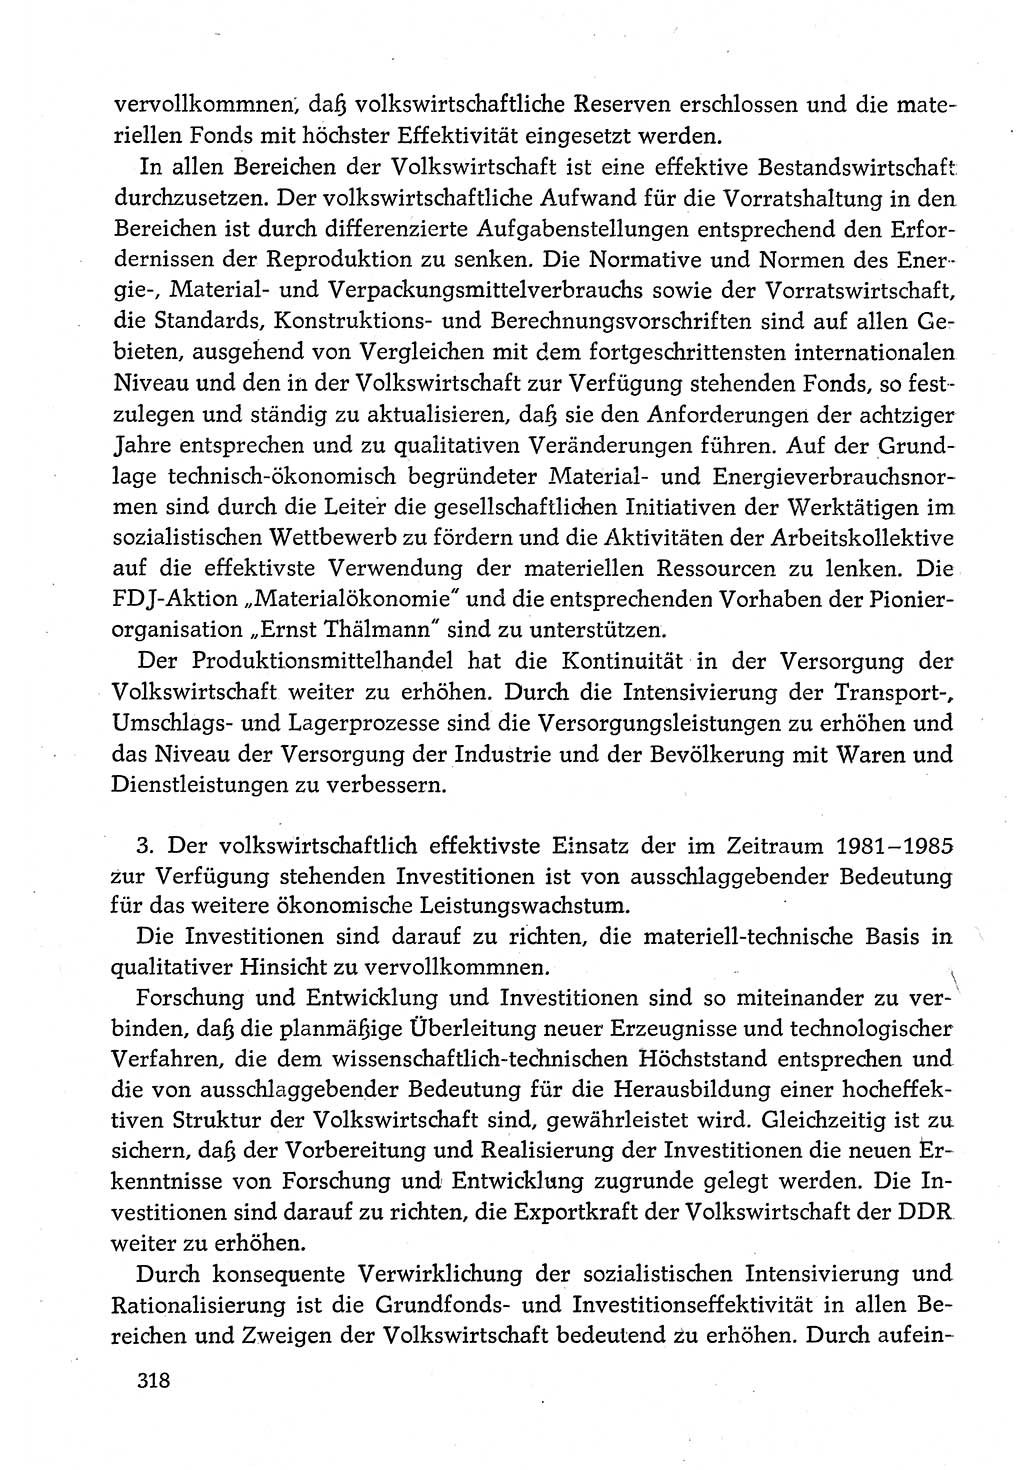 Dokumente der Sozialistischen Einheitspartei Deutschlands (SED) [Deutsche Demokratische Republik (DDR)] 1980-1981, Seite 318 (Dok. SED DDR 1980-1981, S. 318)